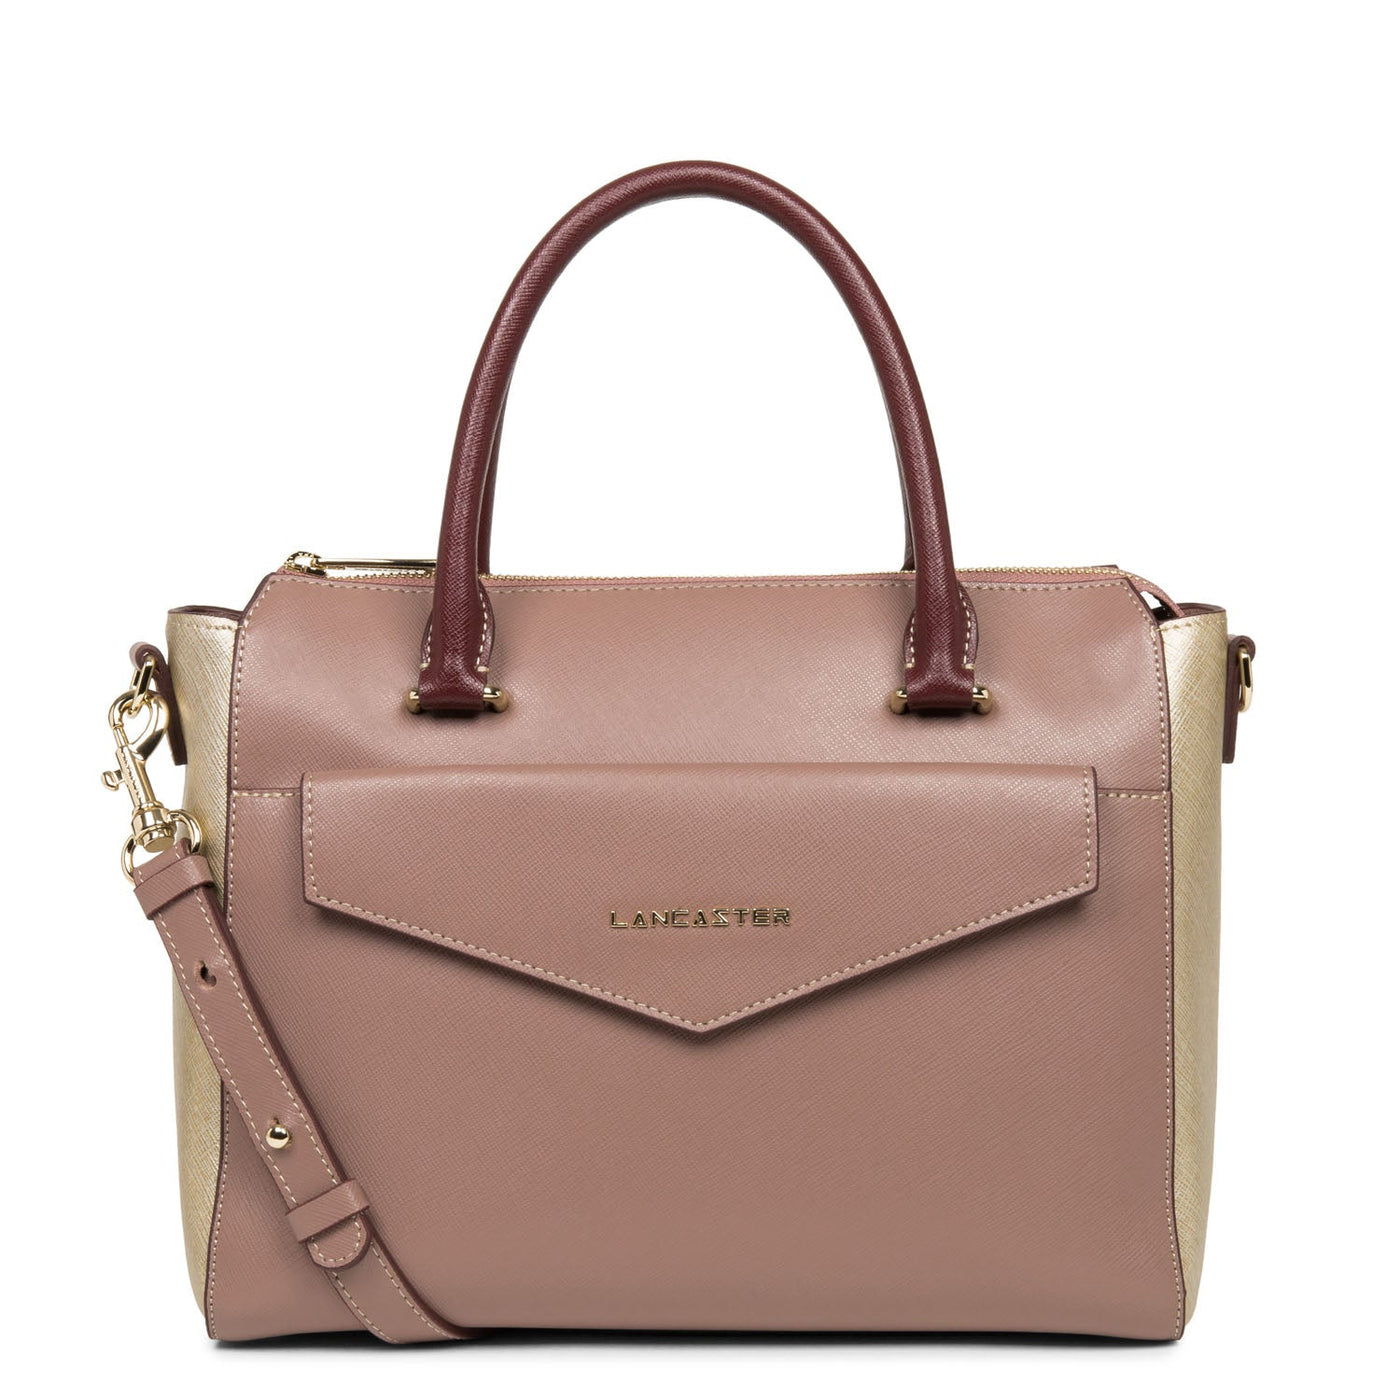 handbag - saffiano signature #couleur_rose-antique-champagne-bordeaux